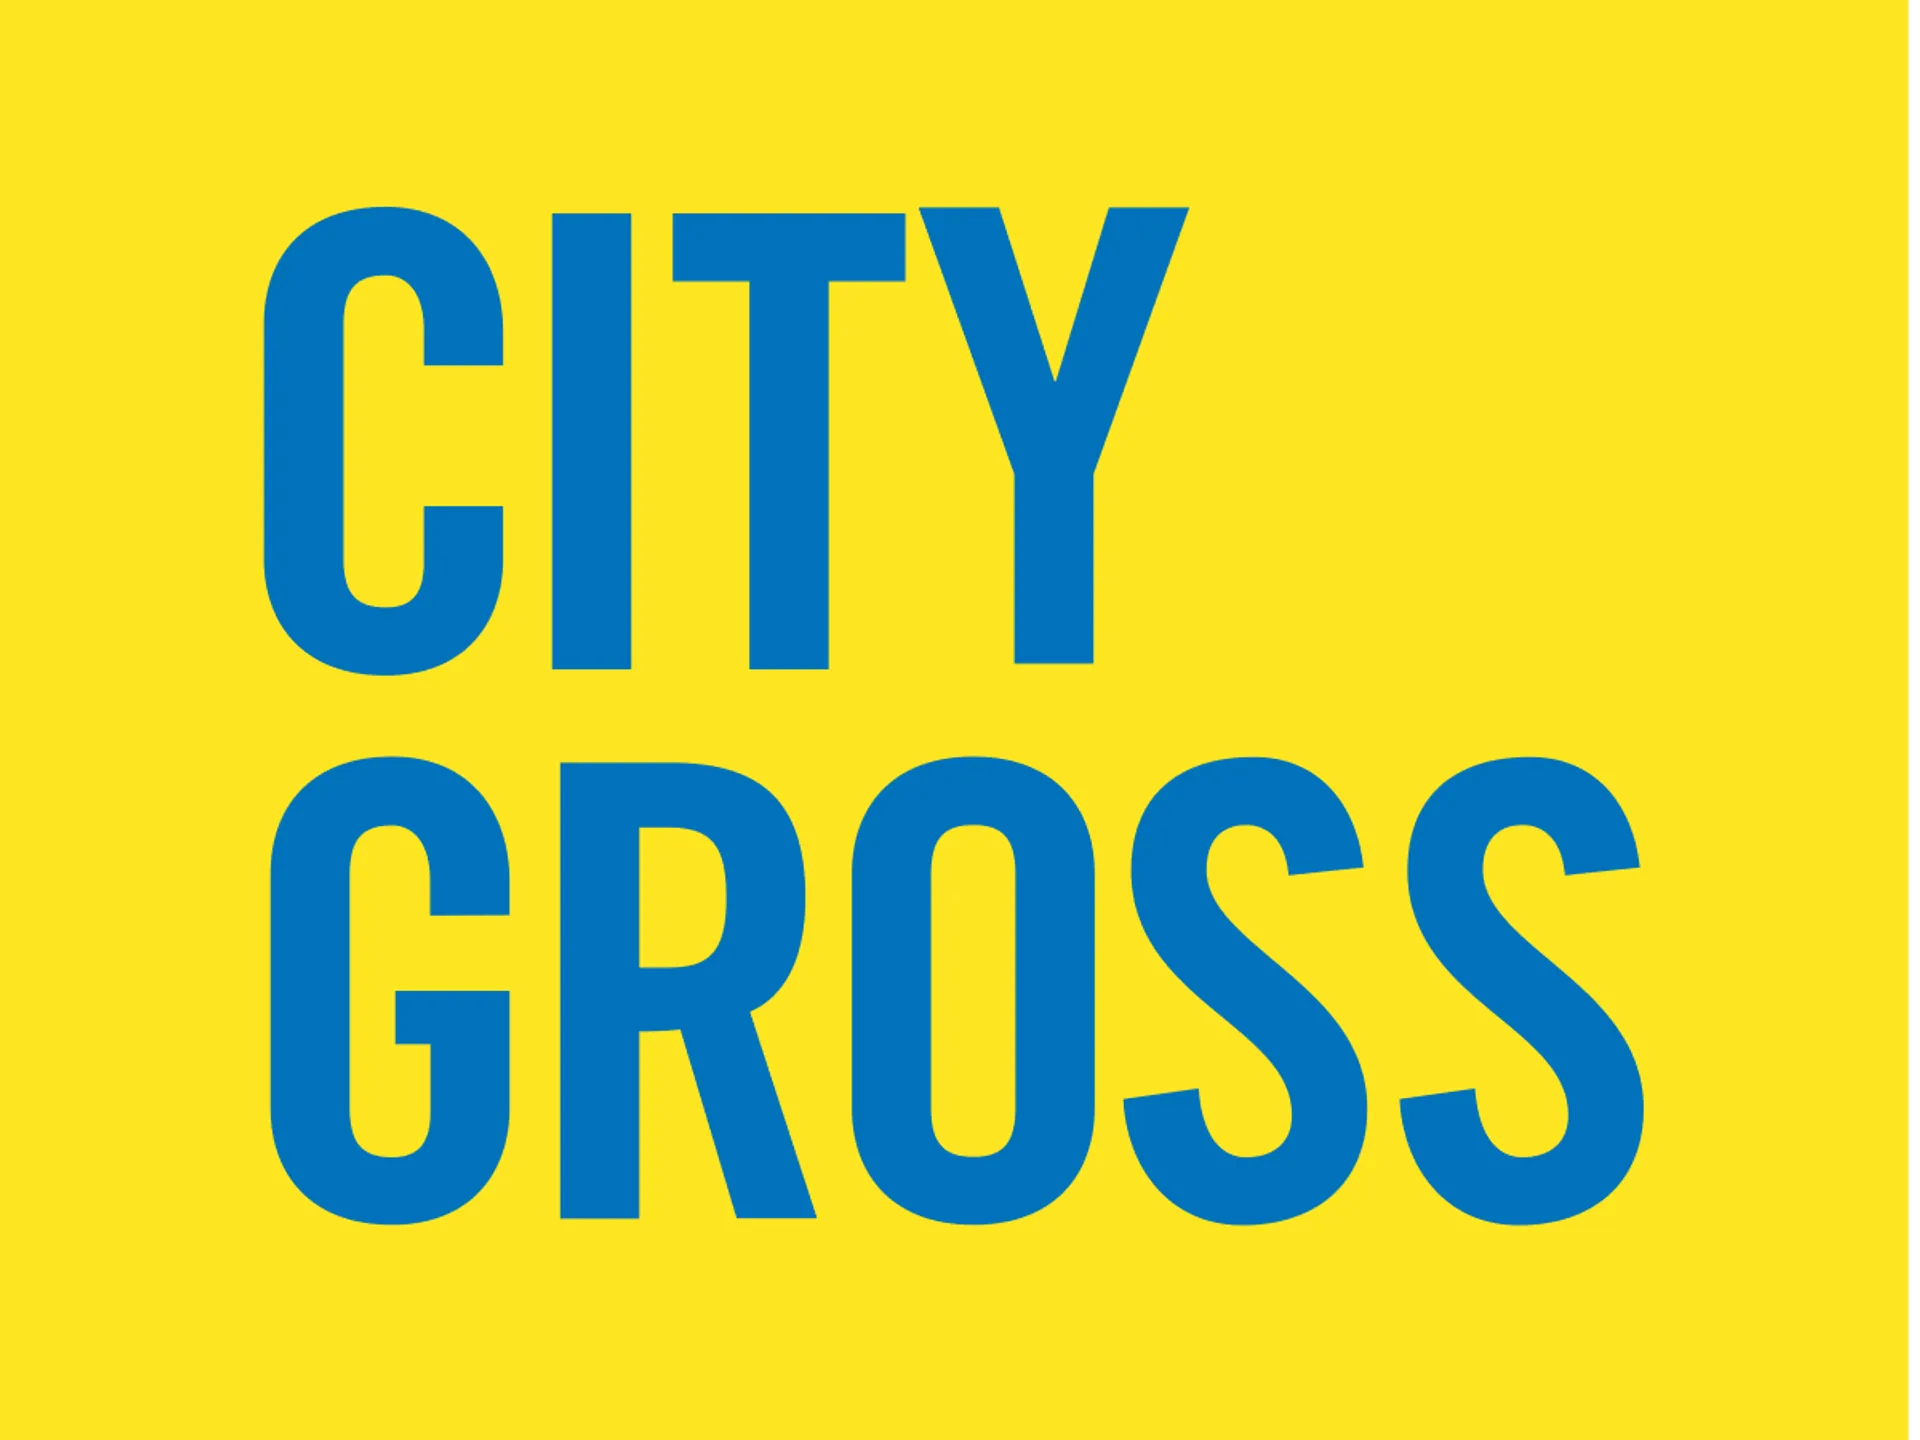 CITY GROSS logo